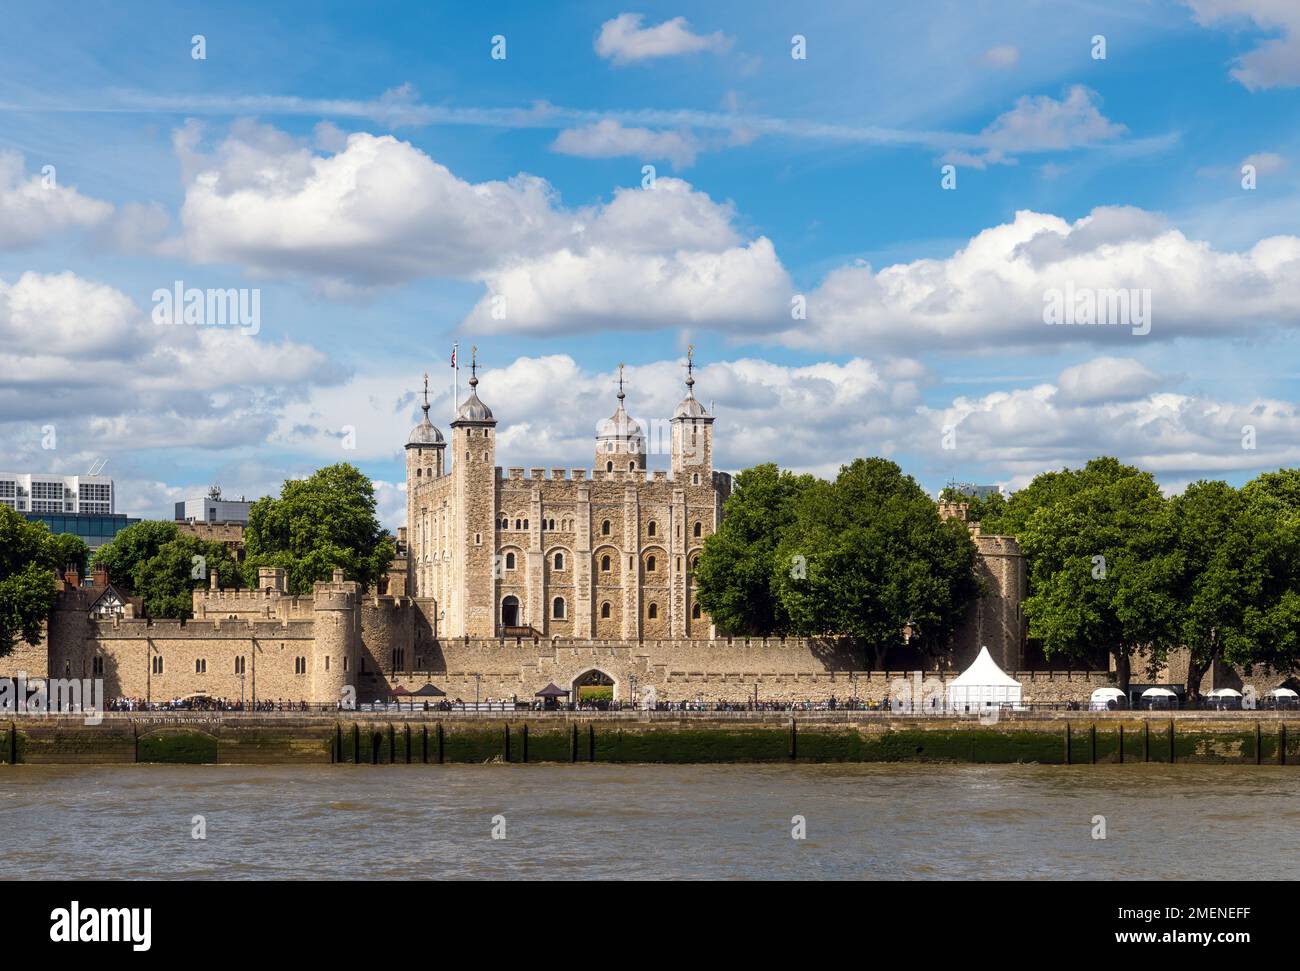 La Tour de Londres, le Palais Royal et la forteresse de la Tour de Londres, Londres, Angleterre Banque D'Images